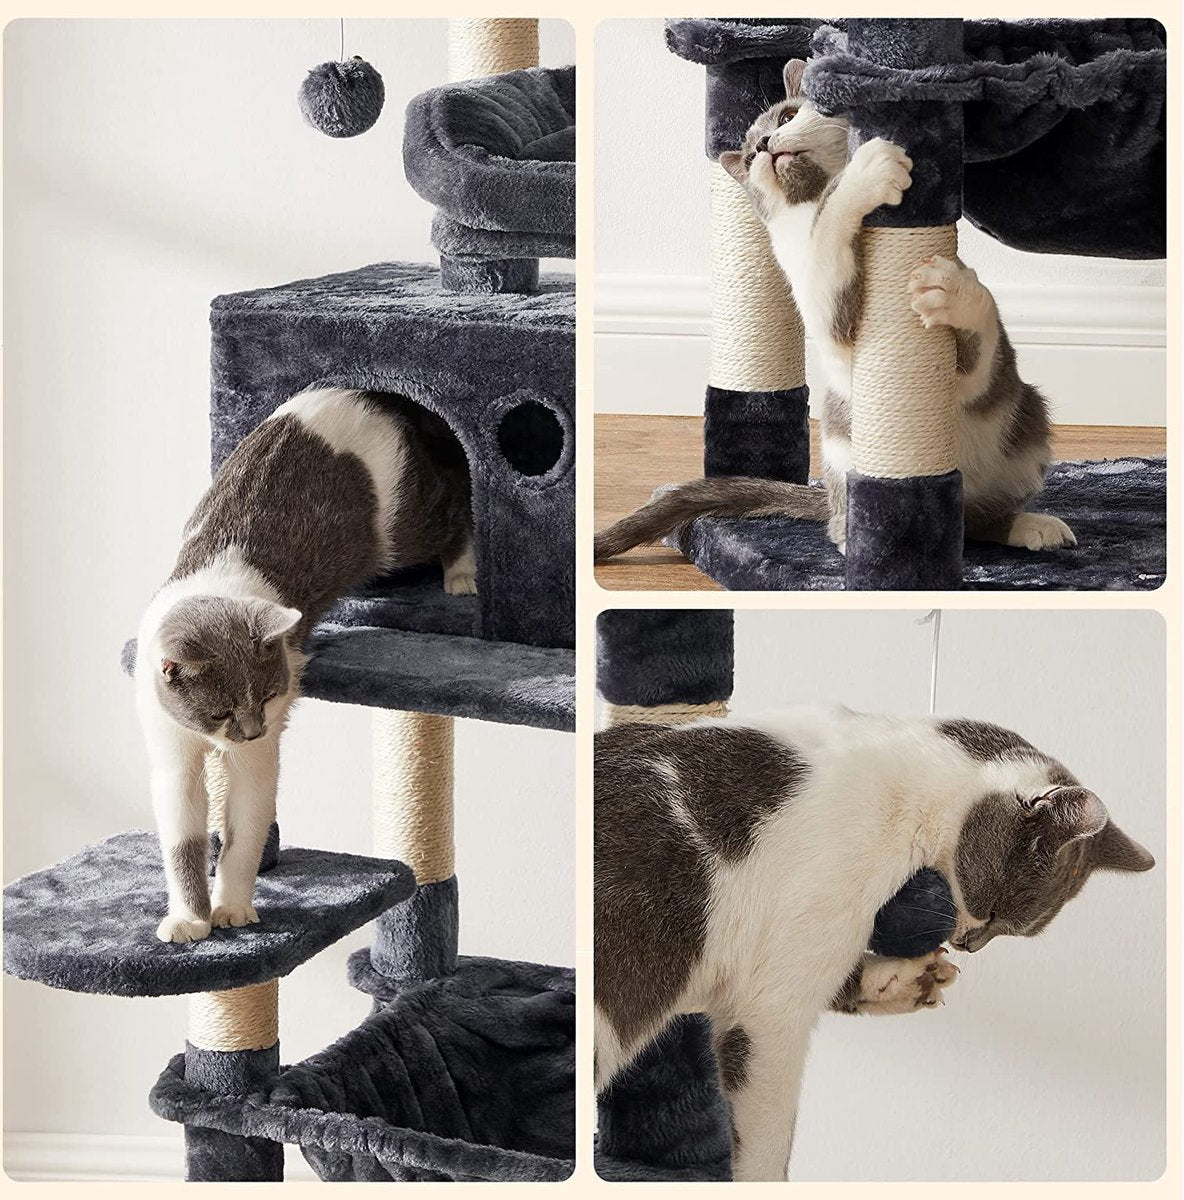 Krabpaal - 143 cm - Klimpaal voor Katten - Kattenboom - Hangmat en Grot - Met 2 gezellige uitkijkplateaus - Grijs - QDU15HZA